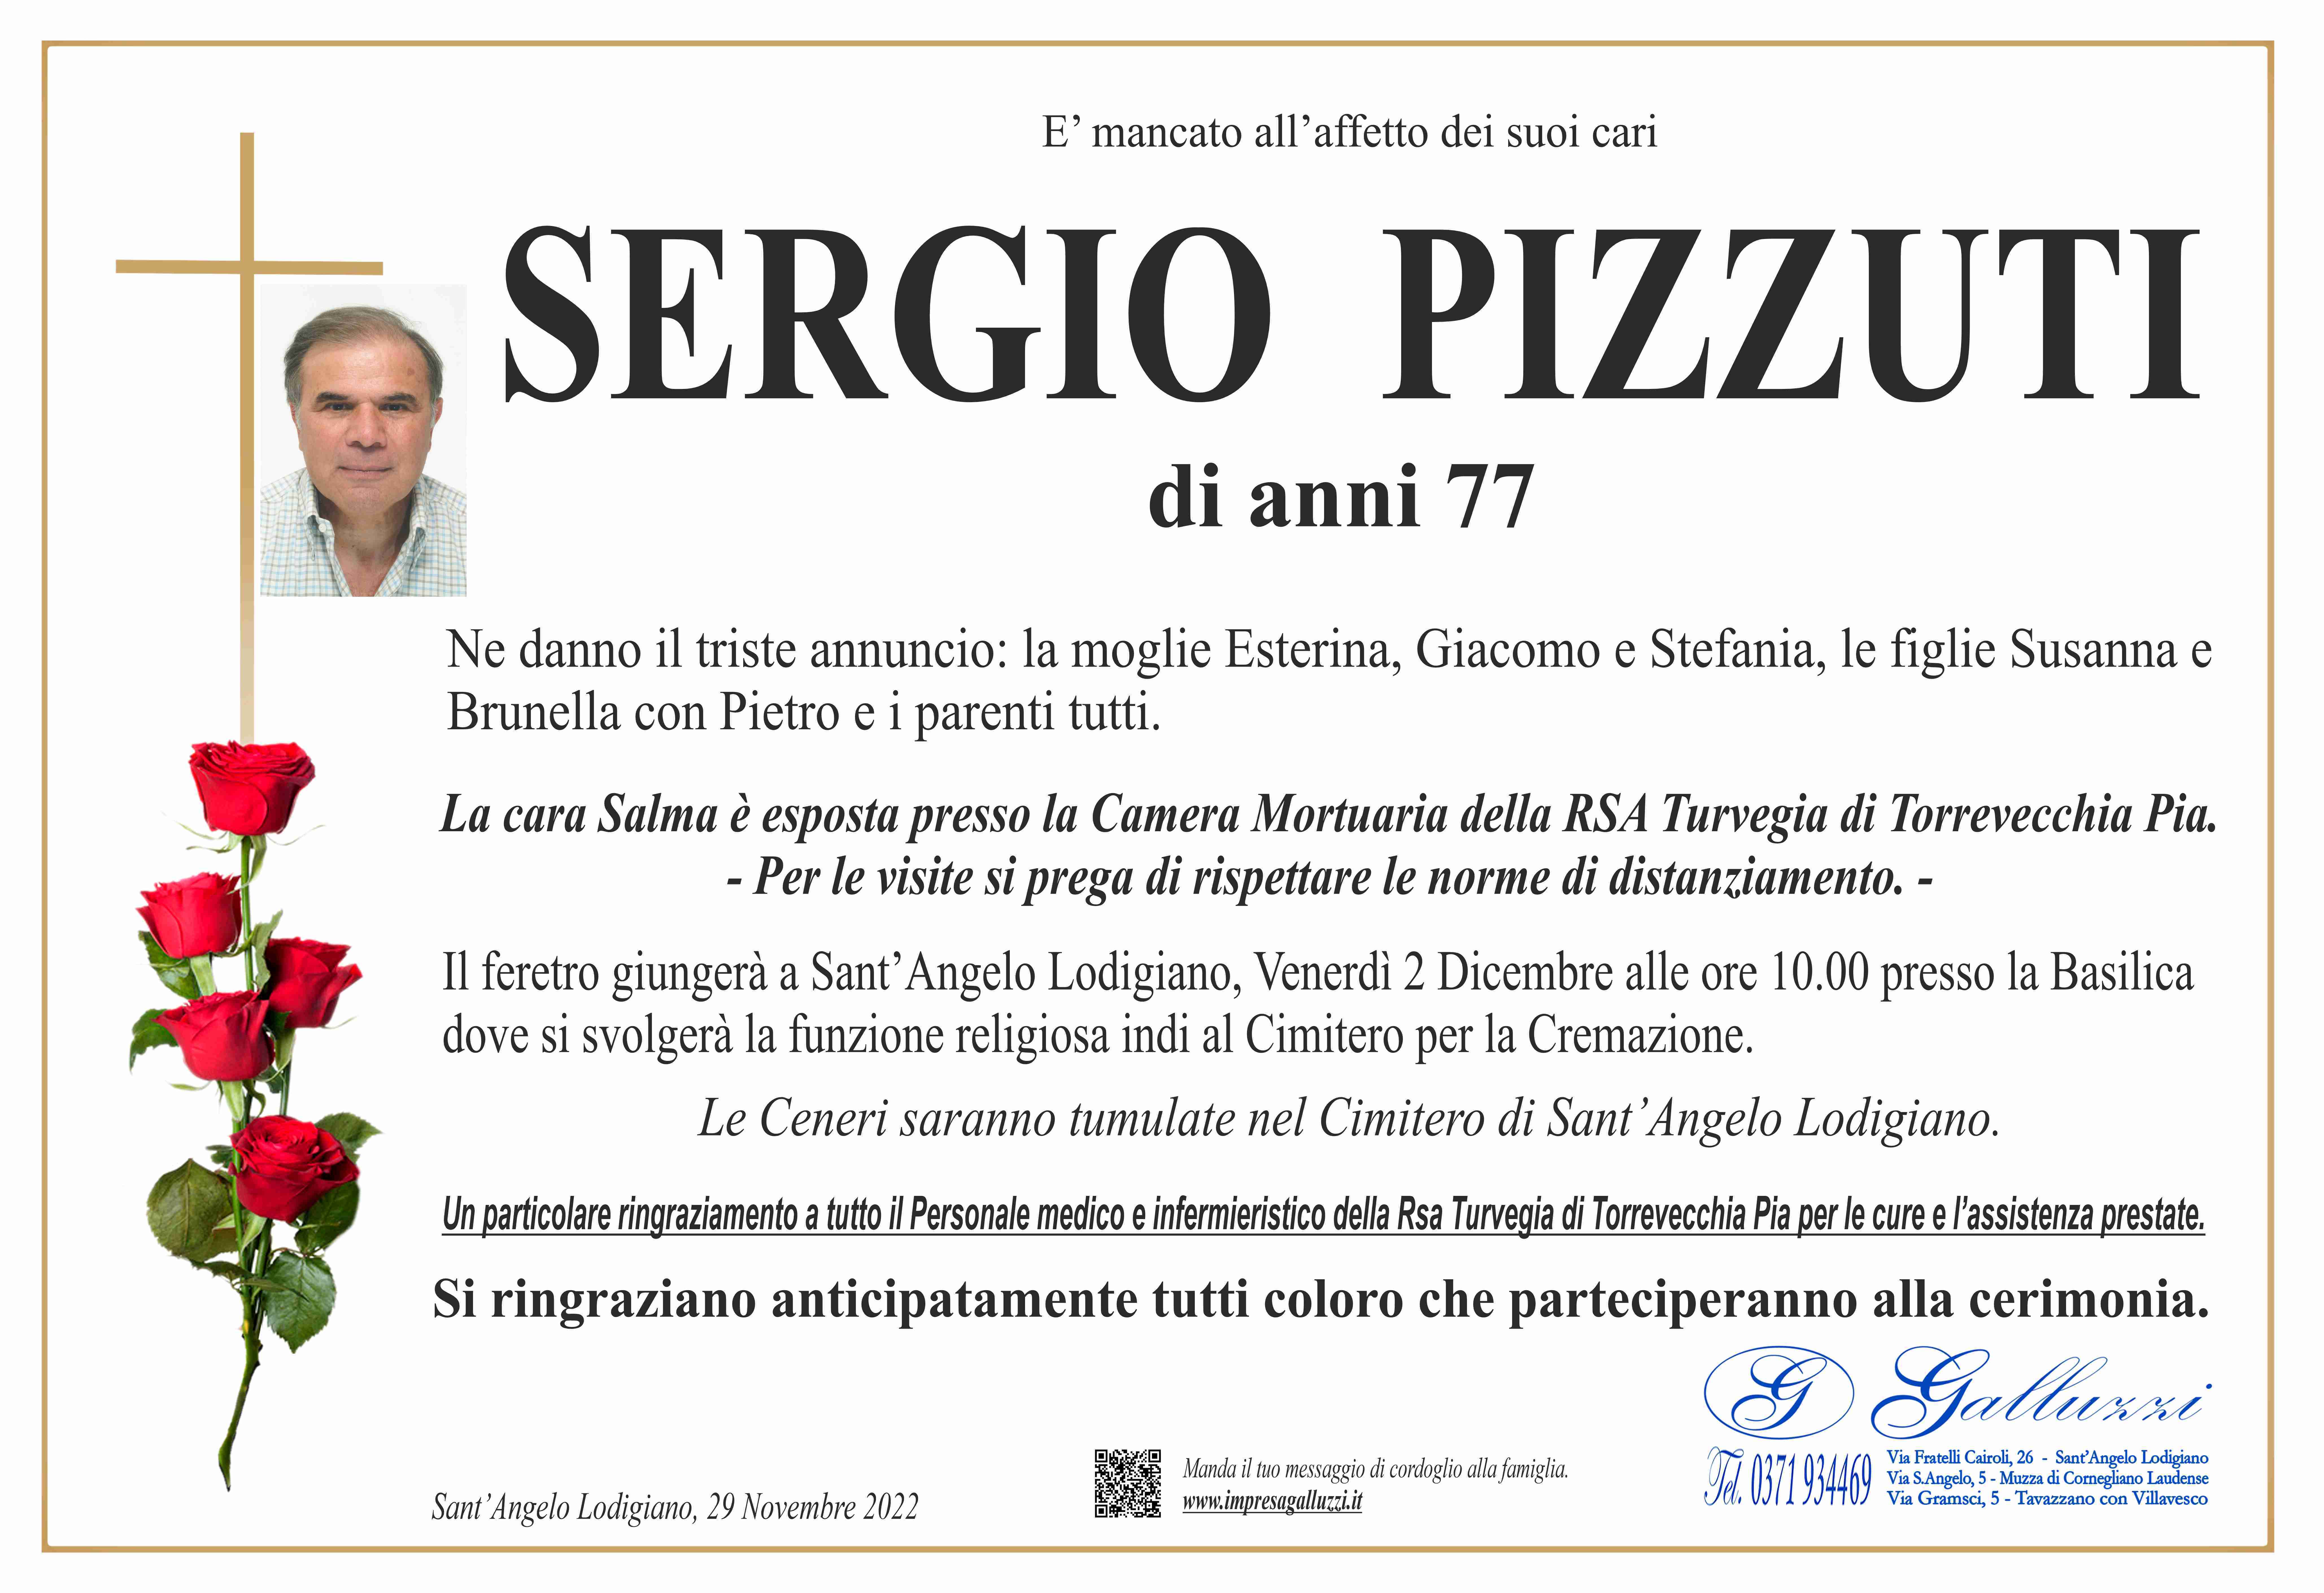 Sergio Pizzuti